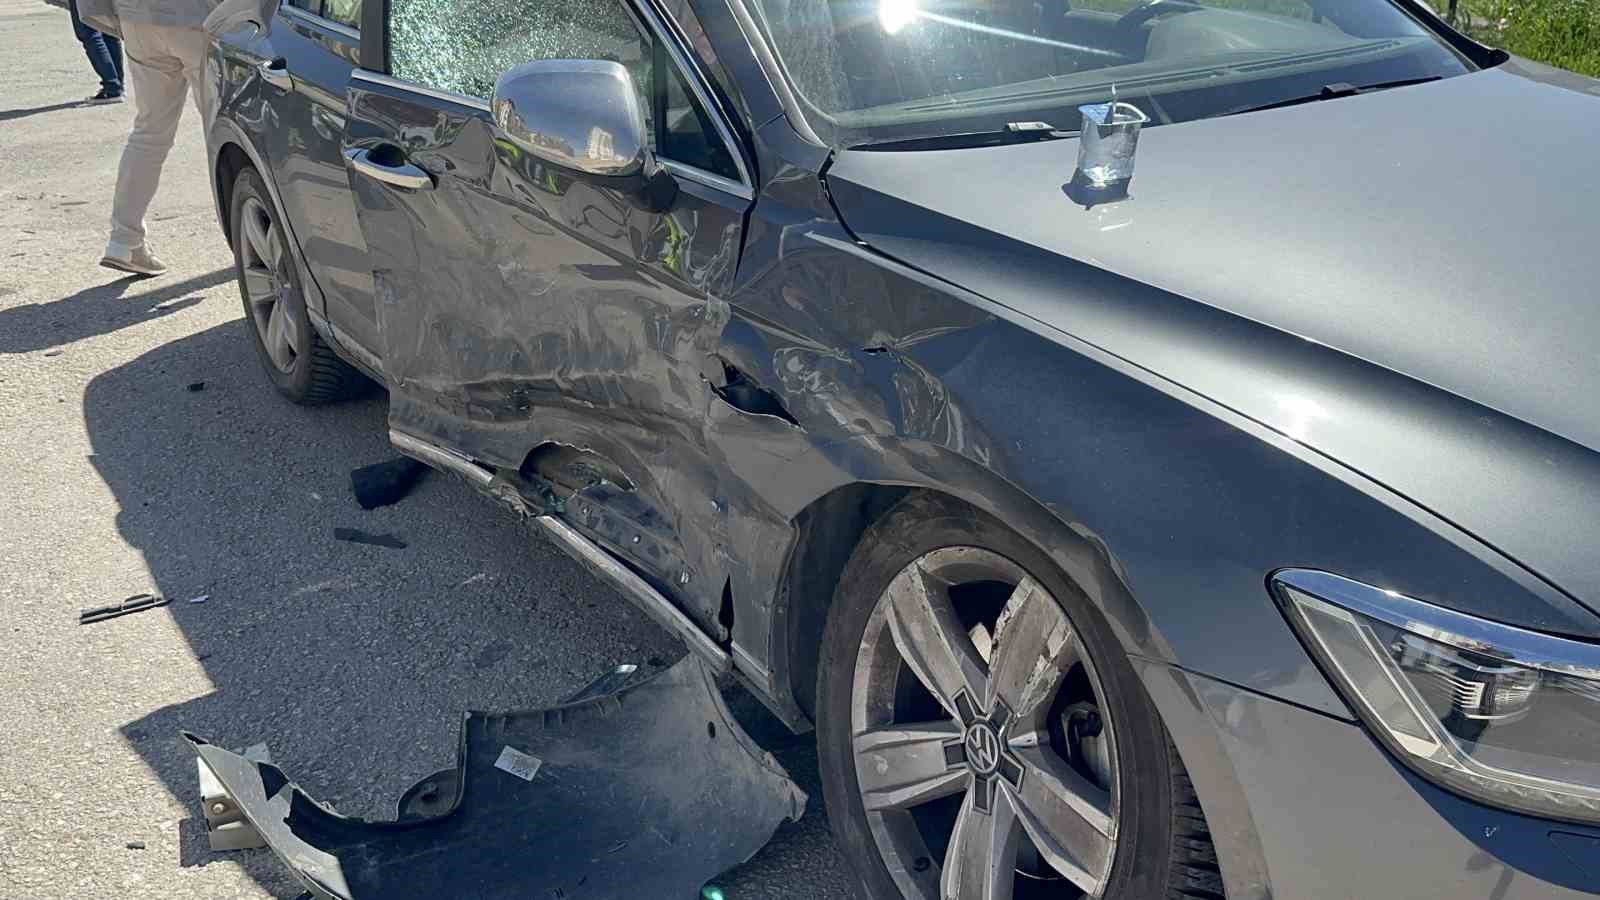 Elazığ’da trafik kazası: 7 yaralı
